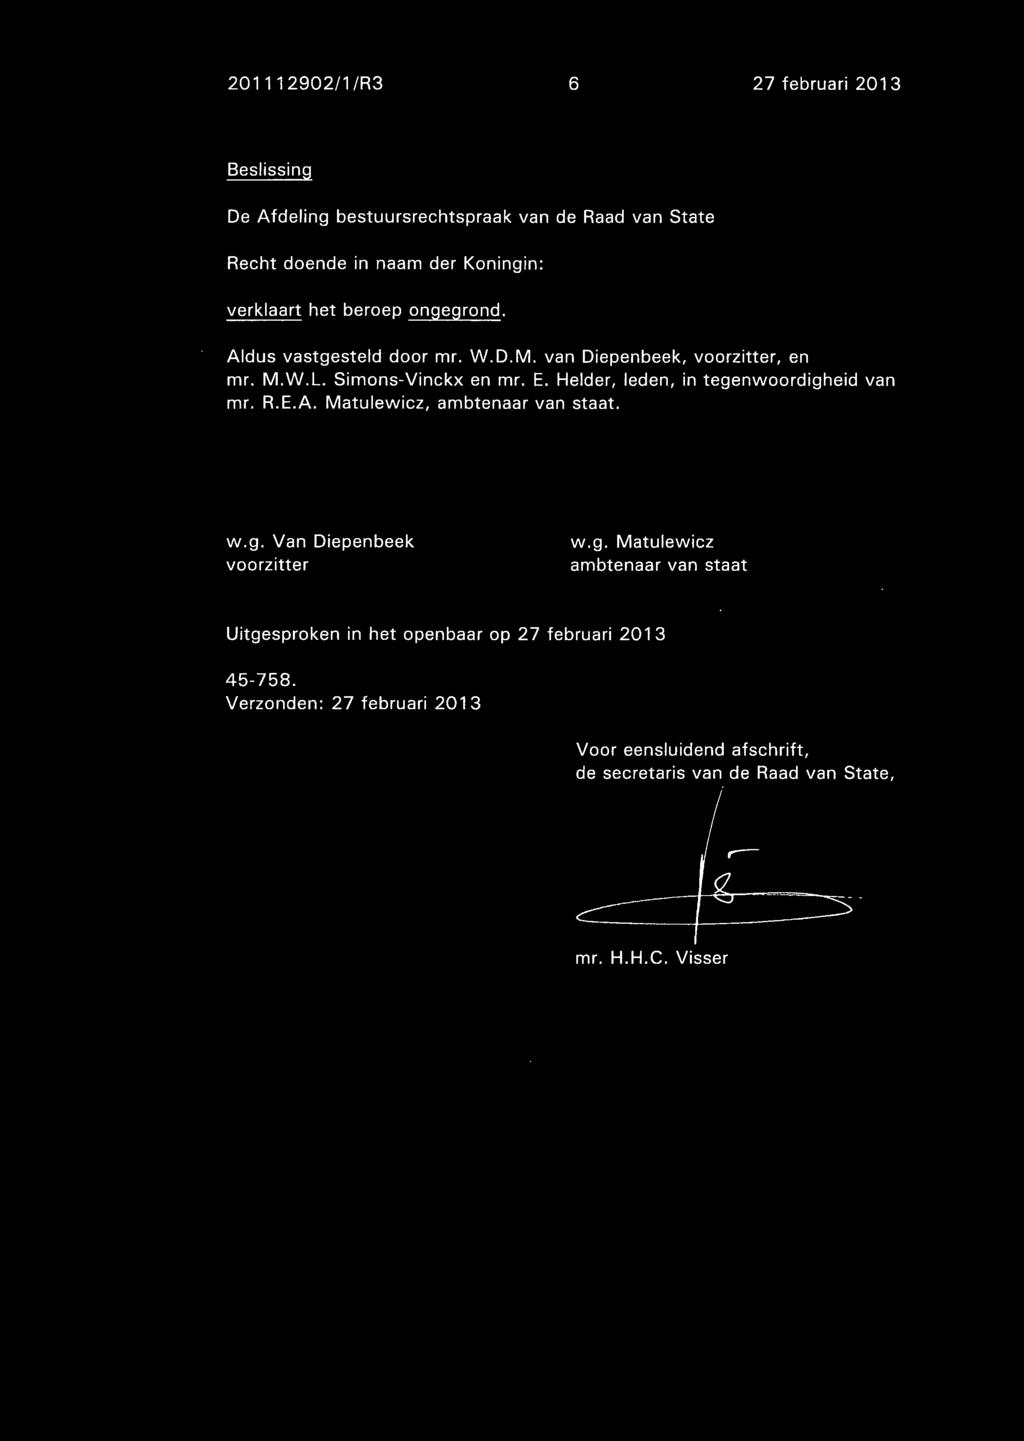 Helder, leden, in tegenwoordigheid van mr. R.E.A. Matulewicz, ambtenaar van staat. W.g. Van Diepenbeek voorzitter W.g. Matulewicz ambtenaar van staat Uitgesproken in het openbaar op 27 februari 2013 45-758.